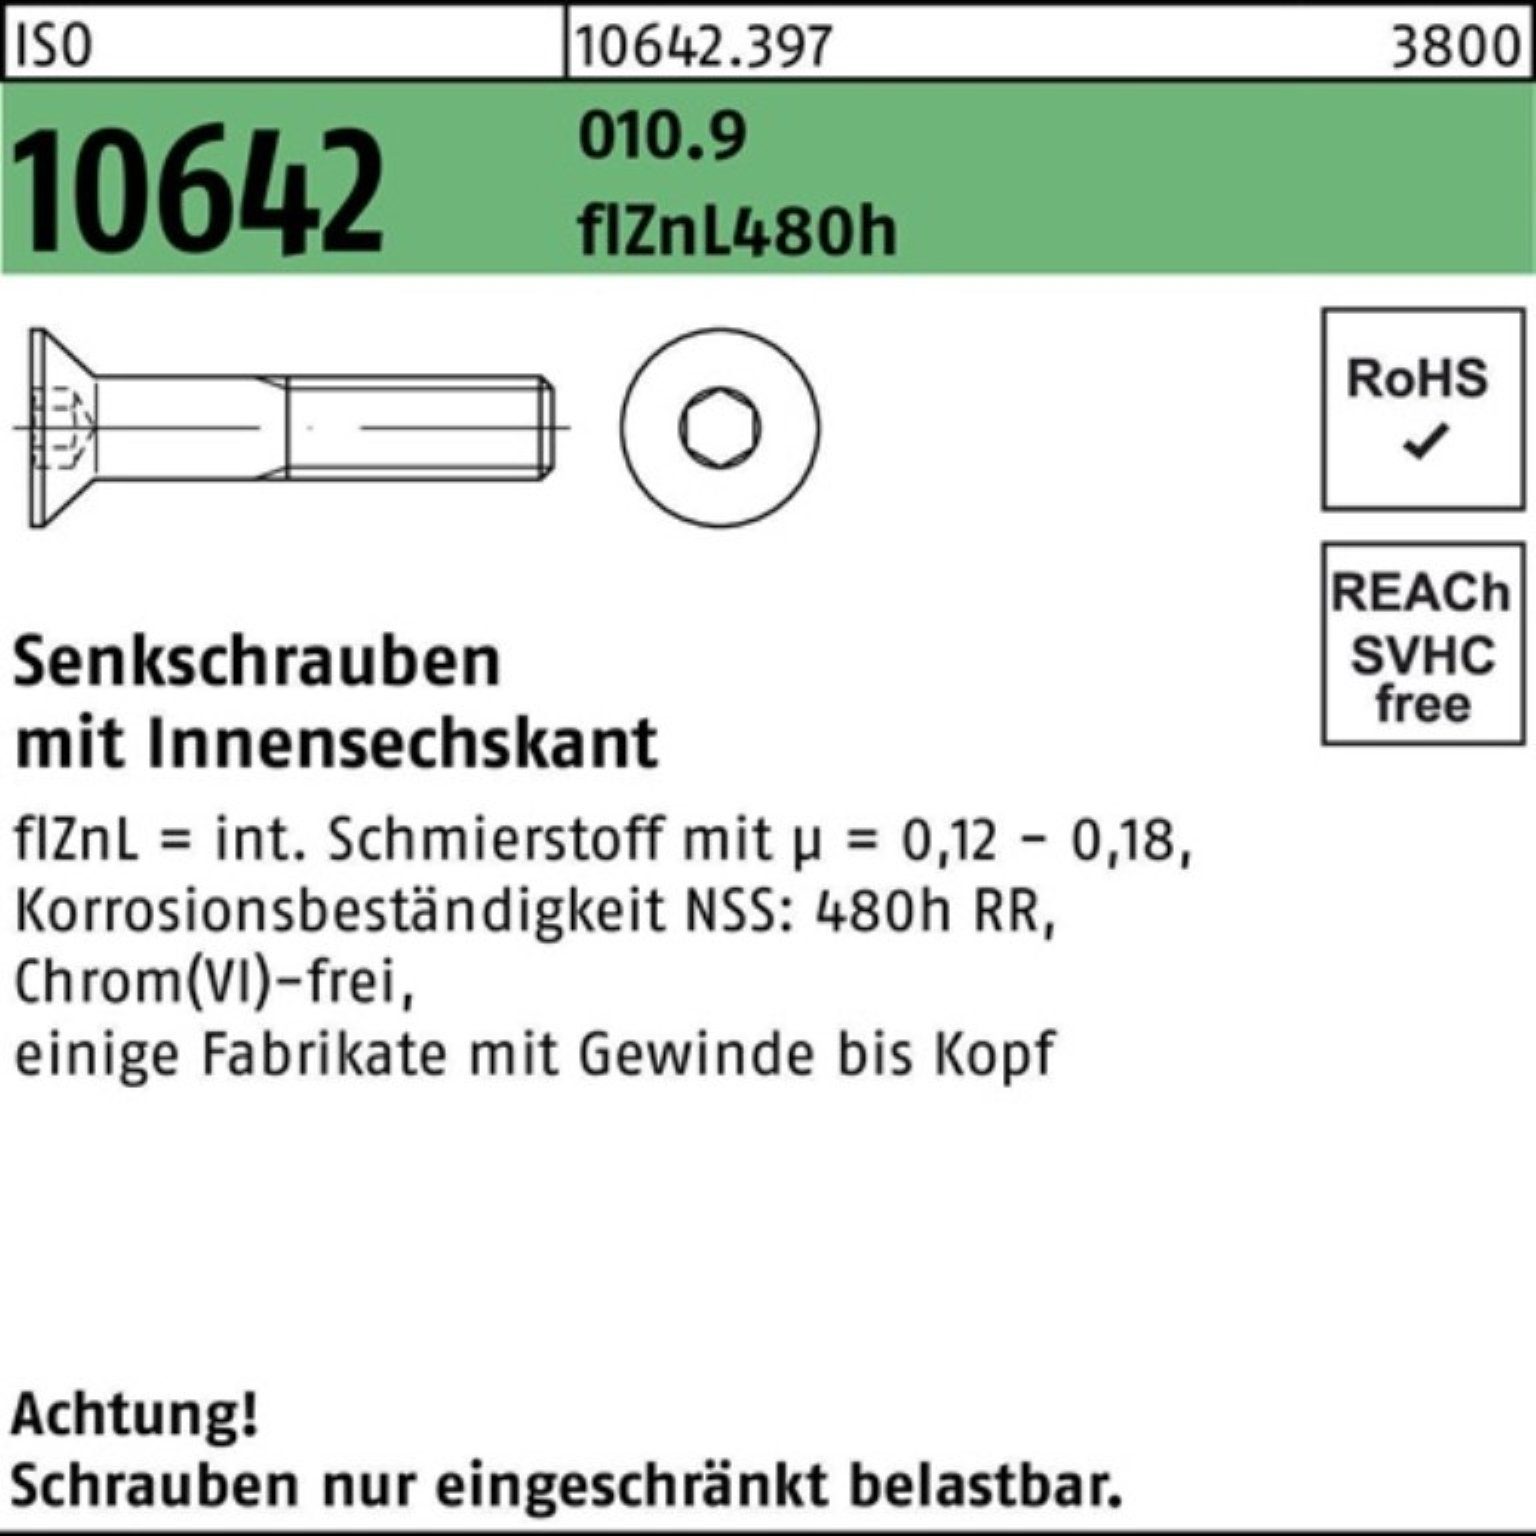 Reyher Senkschraube 200er Pack Senkschraube ISO 10642 Innen-6kt M10x30 010.9 flZnL 480h zi